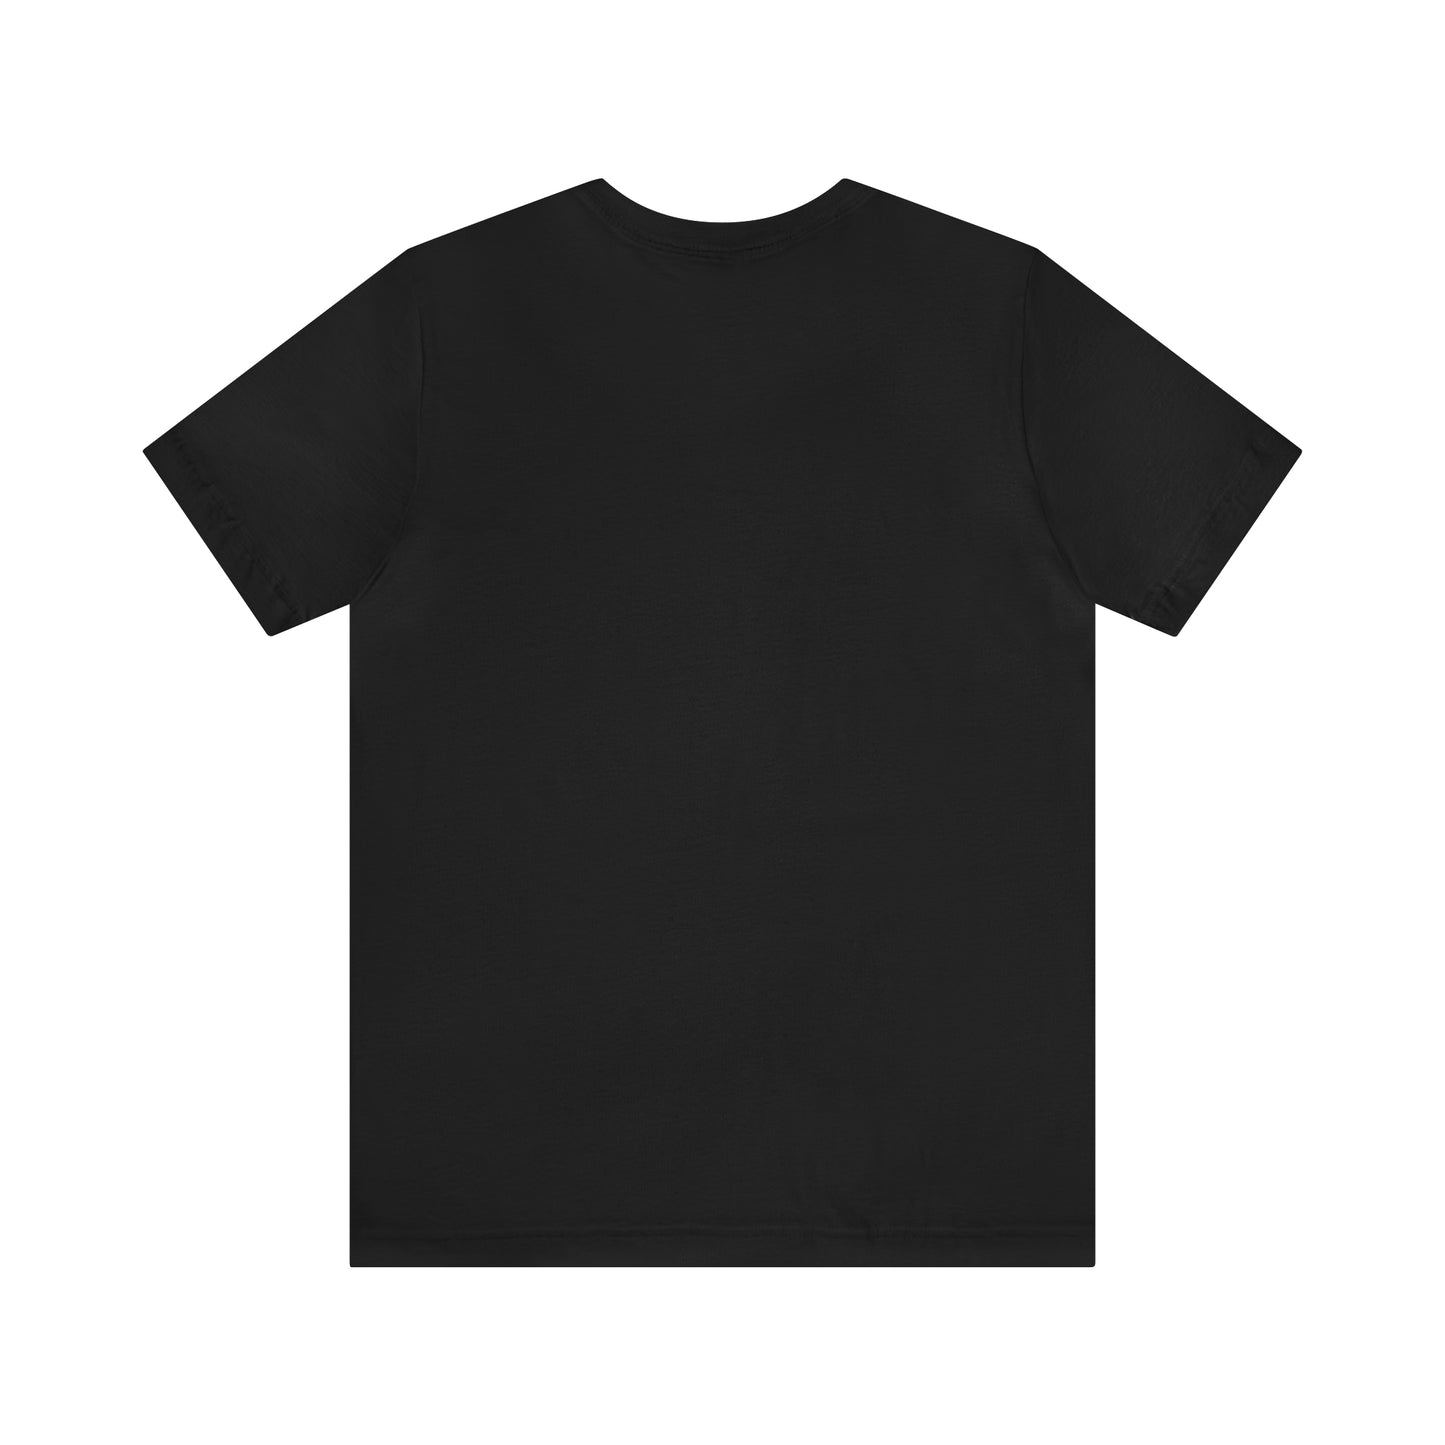 Newton, Mass Pickleball Short Sleeve T-Shirt